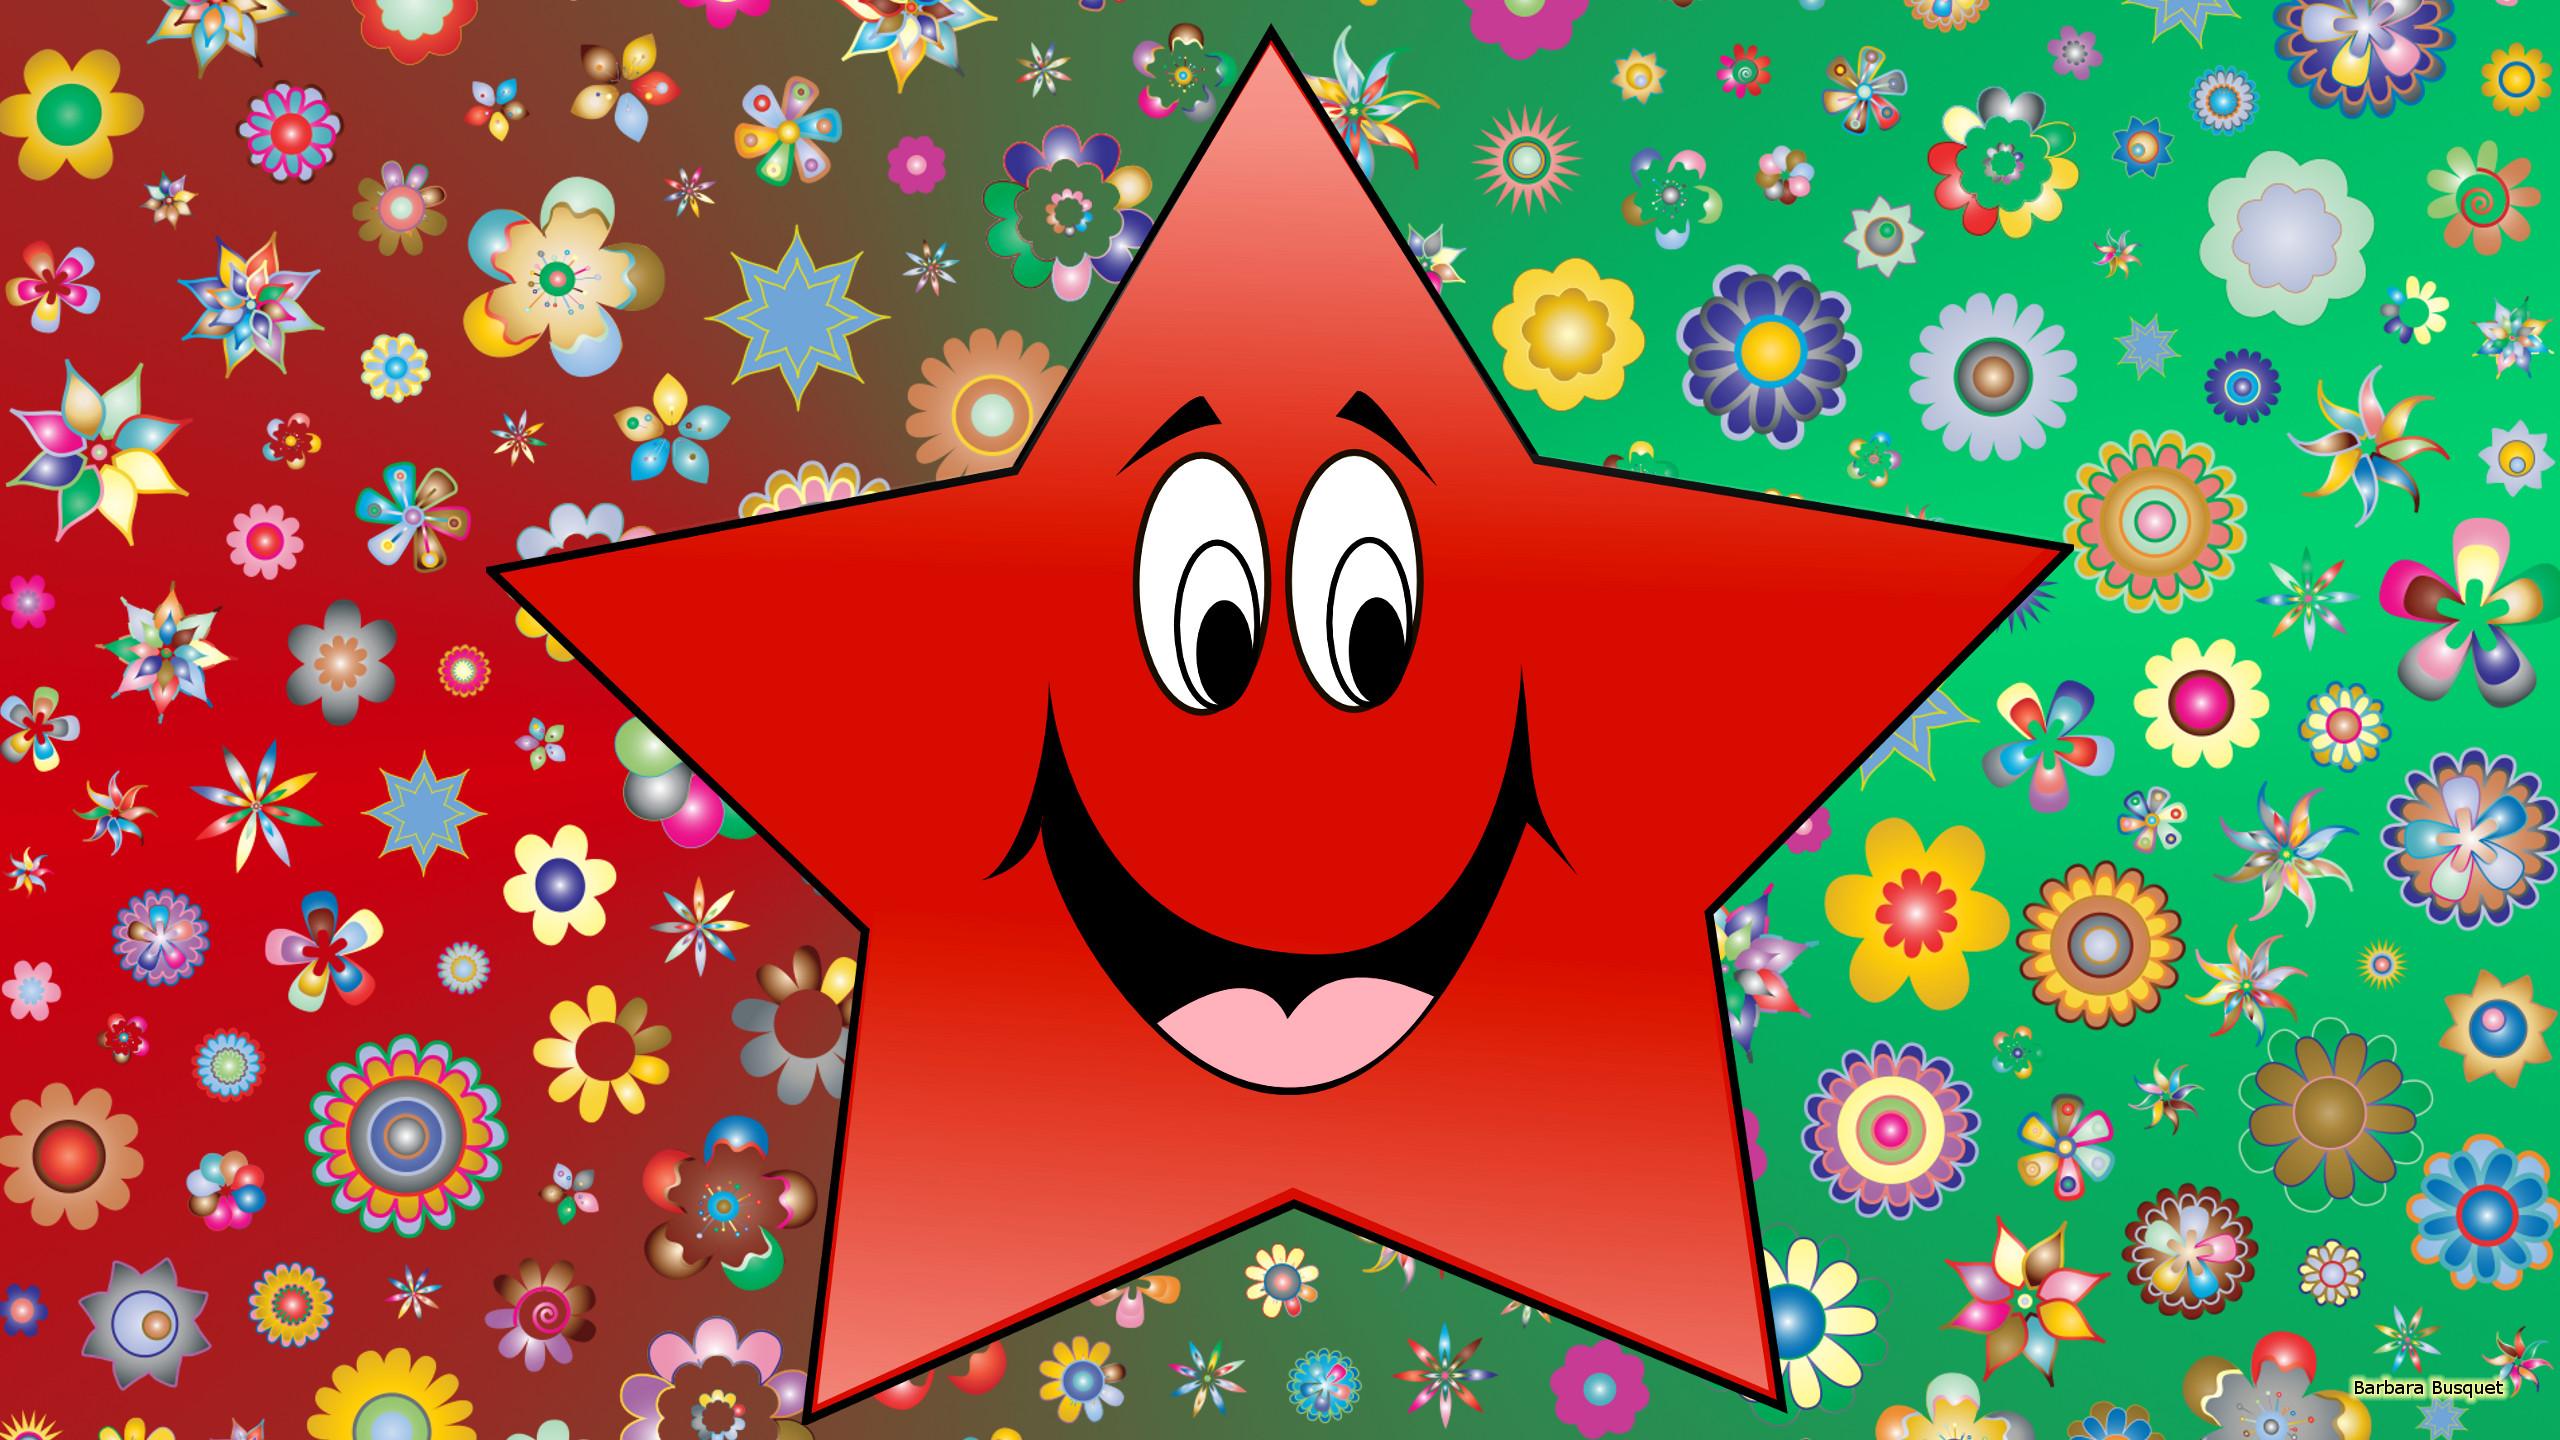 Red Star 3.0 desktop images posted